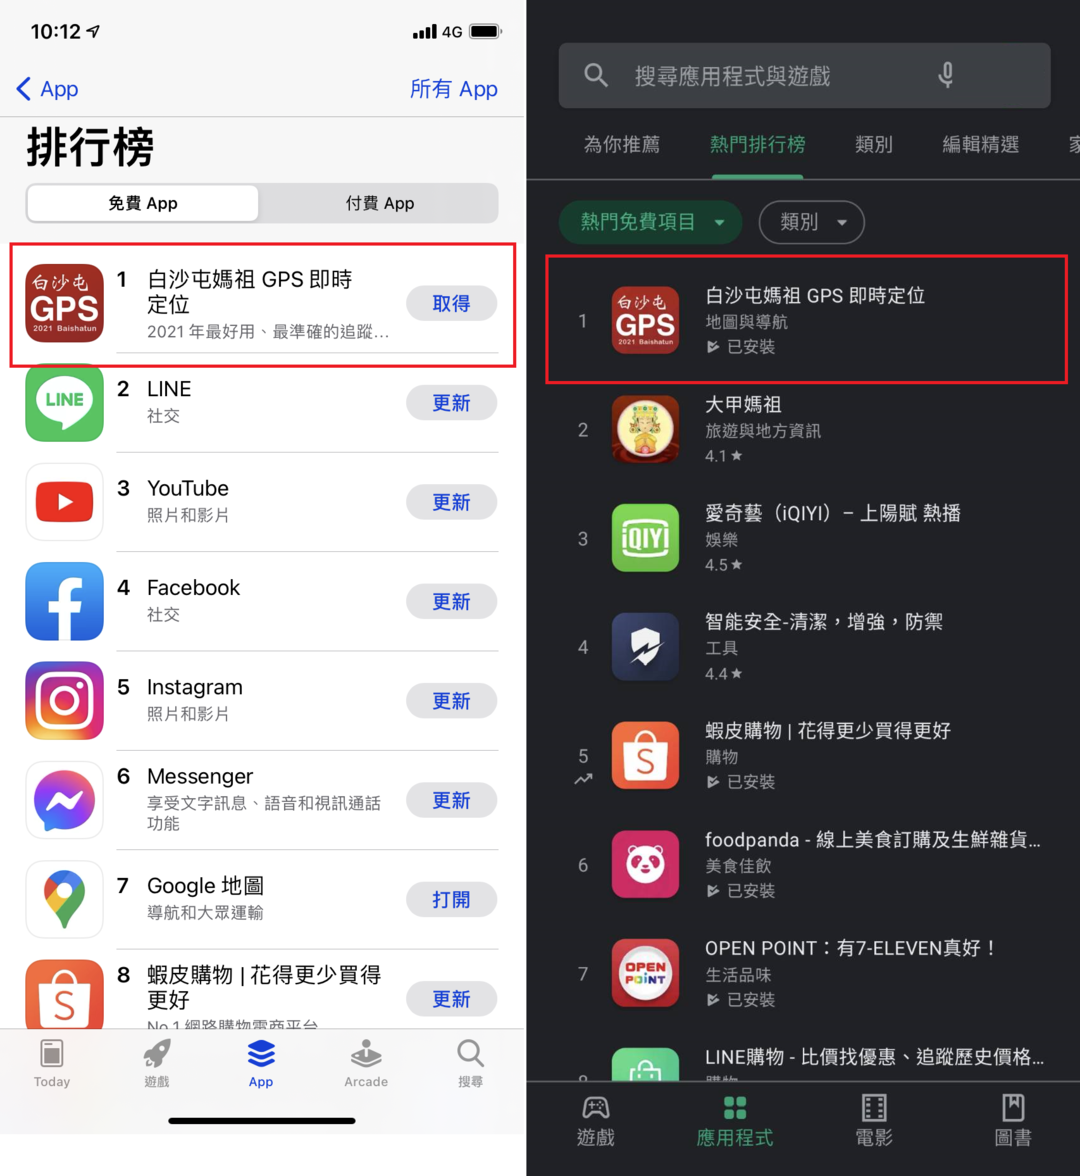 「白沙屯媽祖 GPS 即時定位」App 可以讓全台信徒追蹤白沙屯媽祖即時繞境路線，在 iOS、Android 平台「雙雙霸榜」，排名第一。